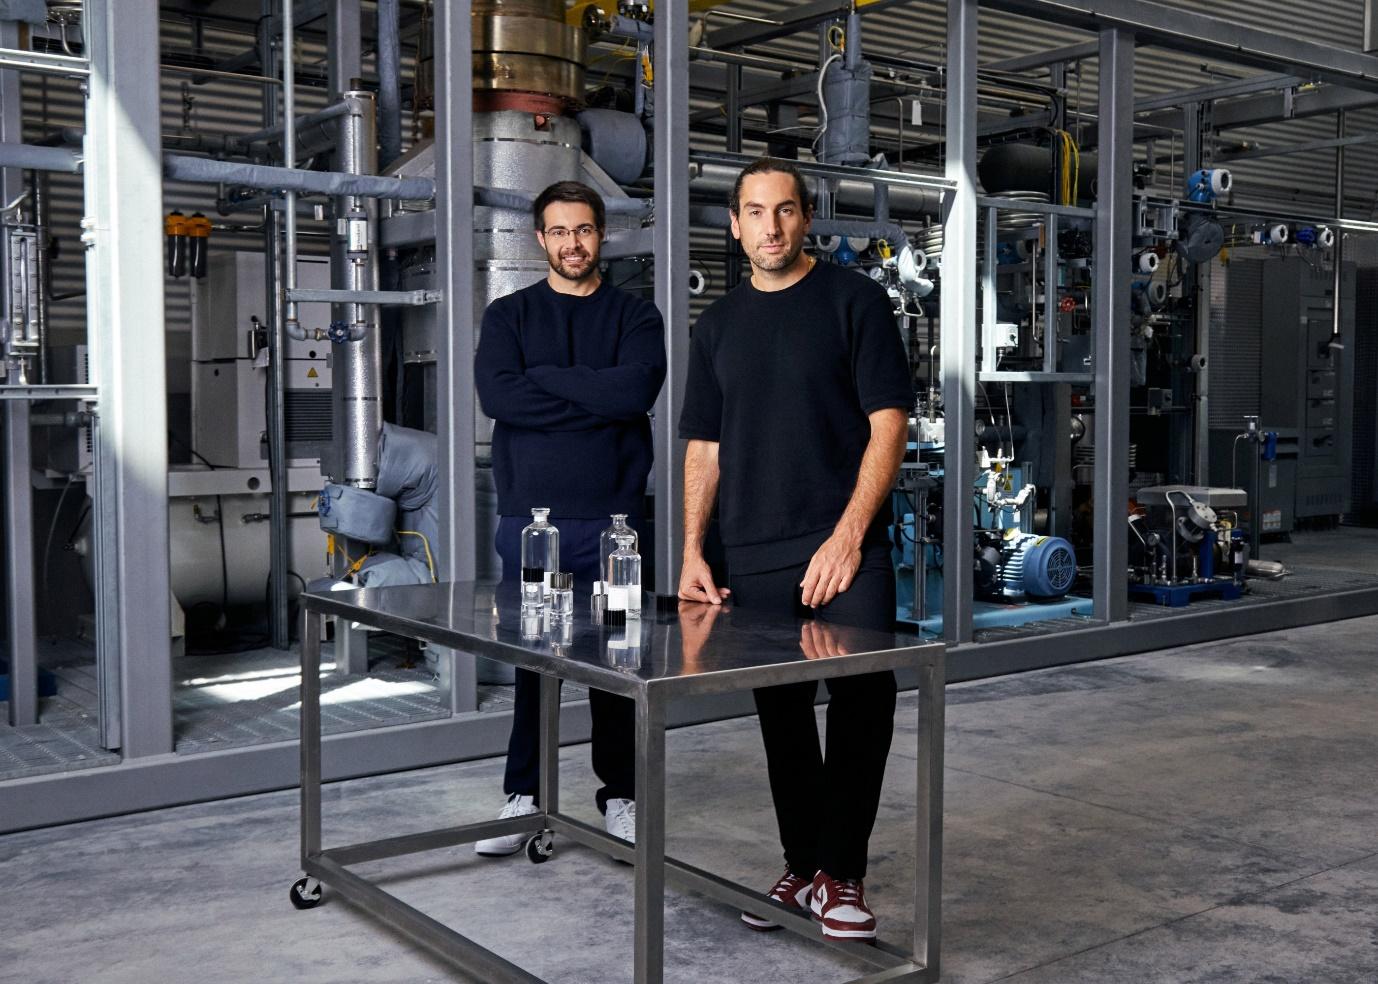 스태퍼드 시핸과 그레고리 콘스탄틴(Gregory Constantine)이 설립한 에어 컴퍼니는 이산화탄소를 효모의 발효 원료로 변환하는 방법을 연구하고 있다.